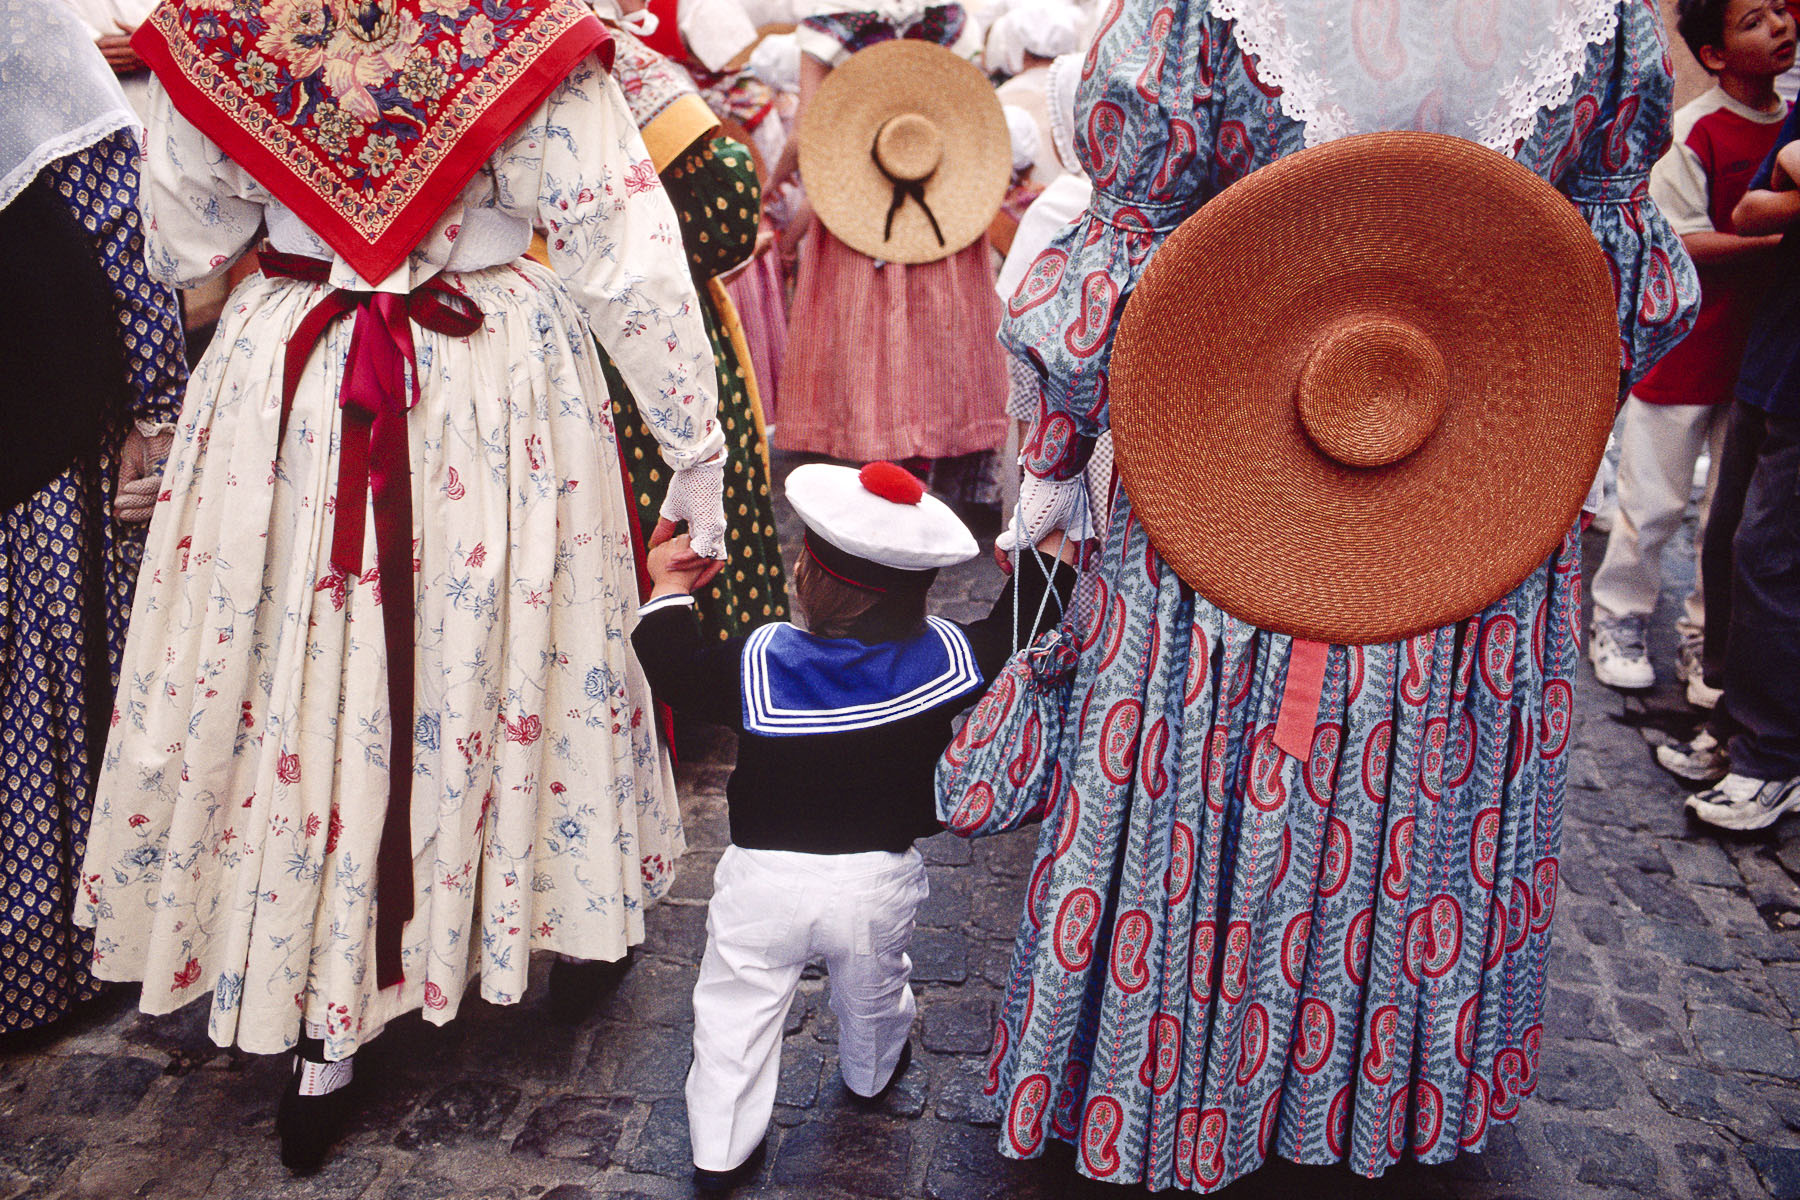 La Bravade, traditional procession. 2000